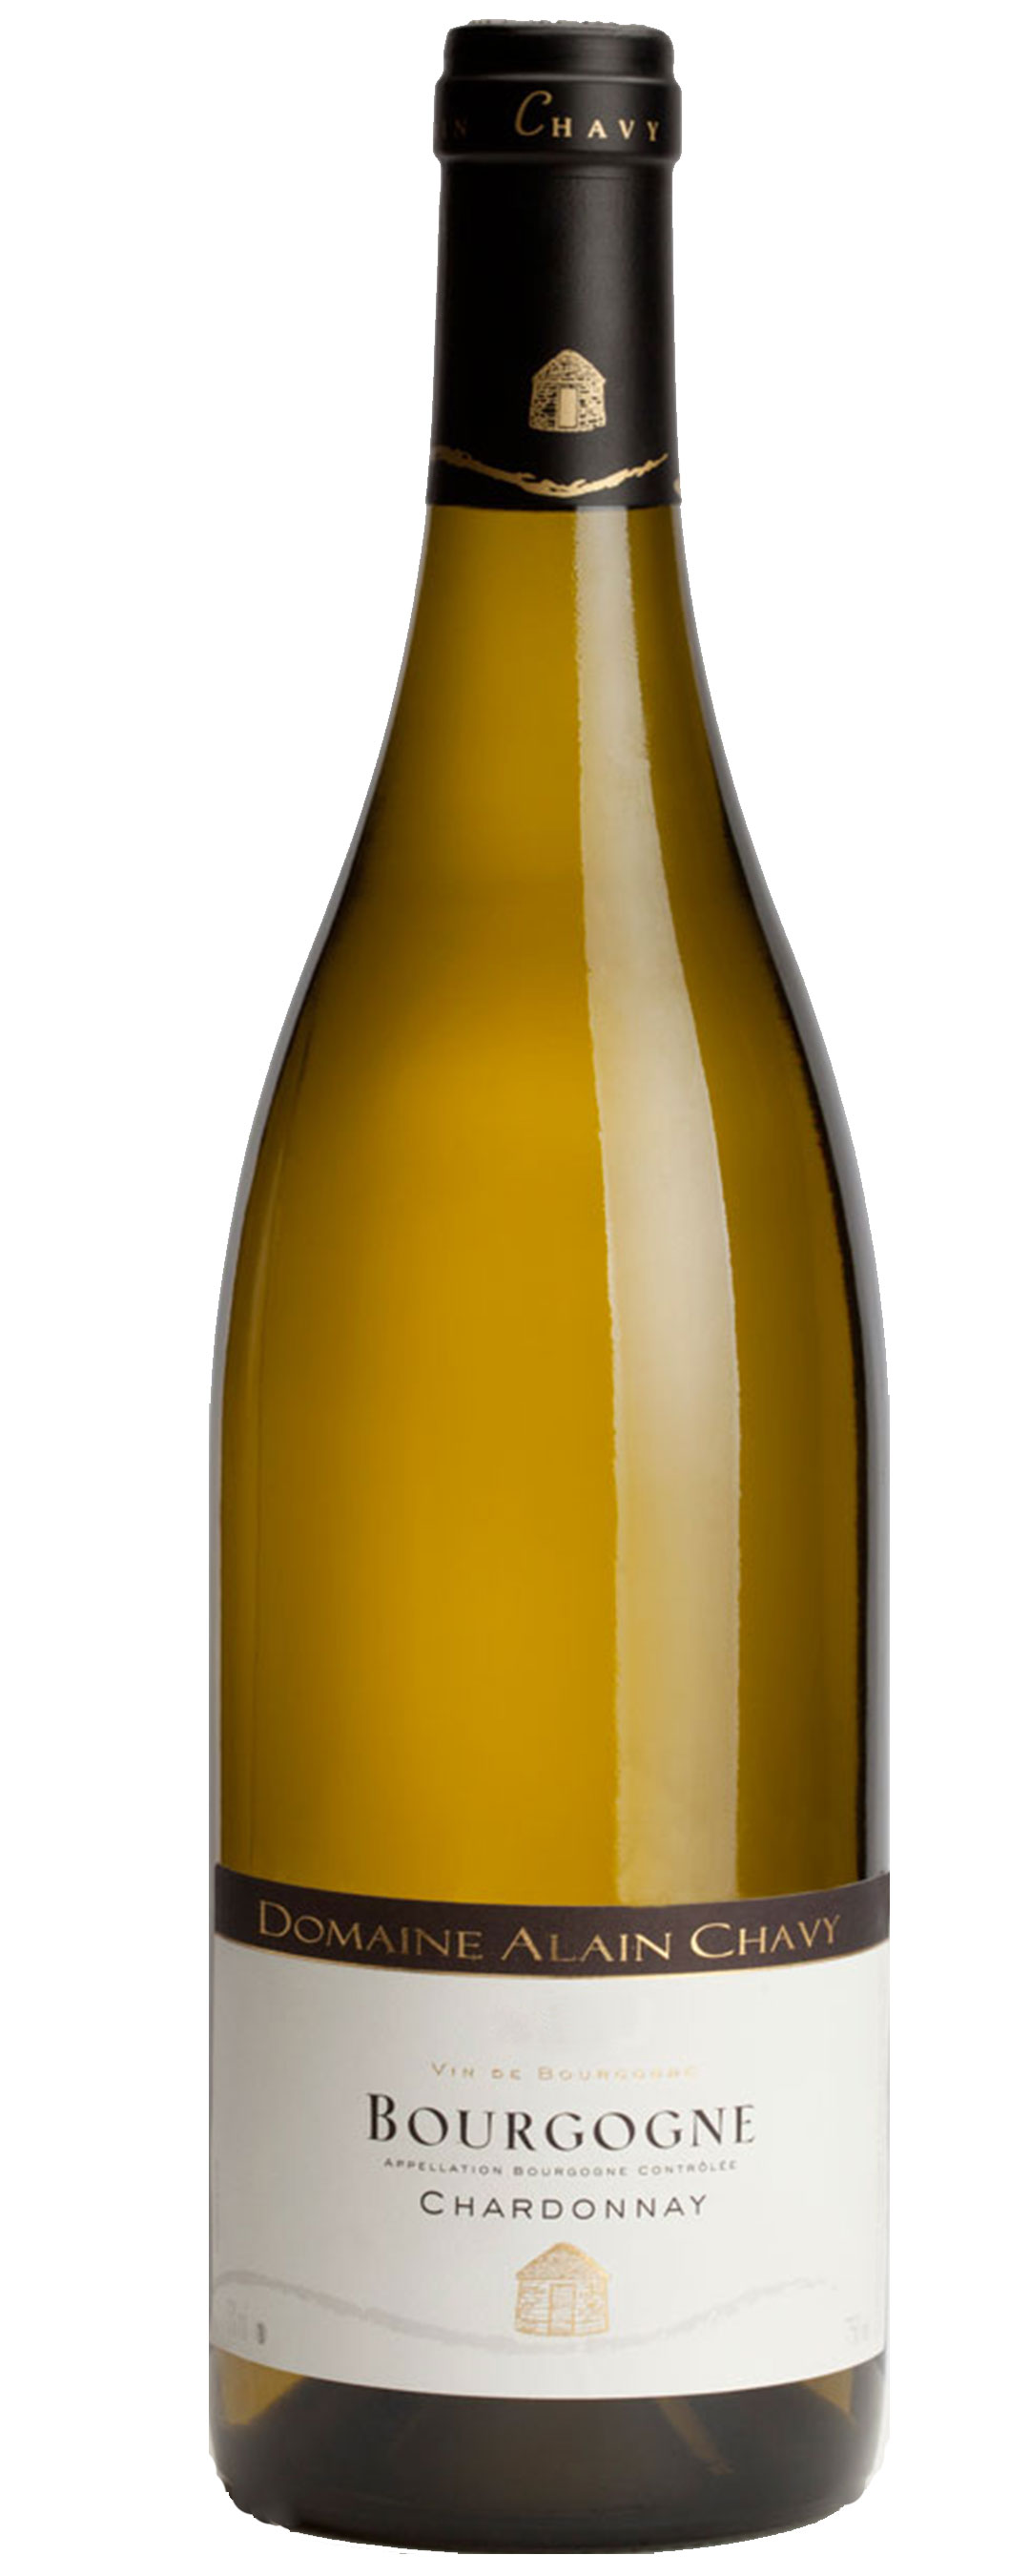 2012 Alain Chavy Bourgogne Blanc - click image for full description